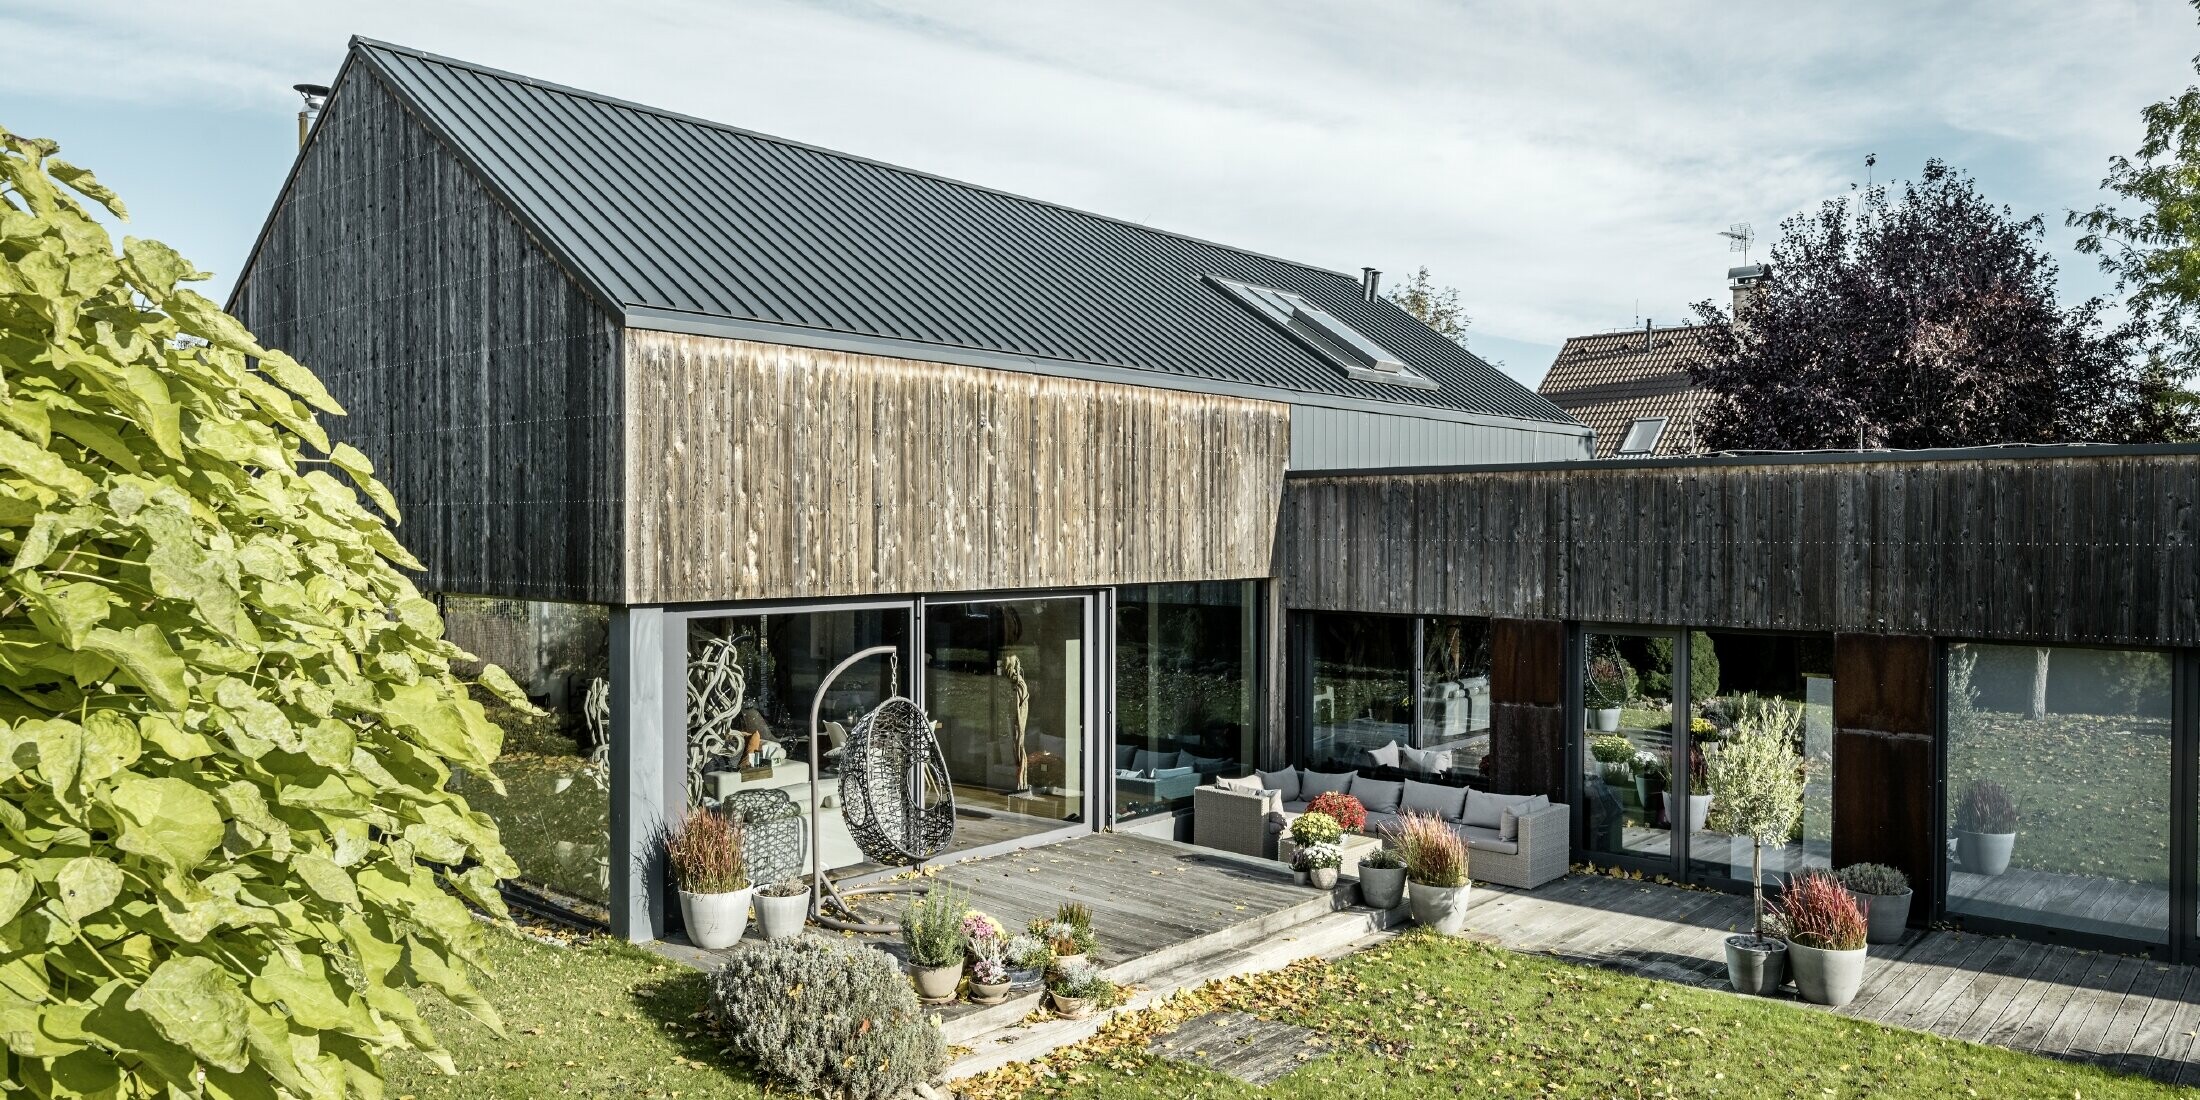 Rodinný dom so sedlovou strechou, zakrytou s dvojitou stojatou drážkou PREFALZ vo farebnom vyhotovení antracitová a zvetranou drevenou fasádou. S peknou drevenou terasou a veľkými okennými plochami na prízemí.